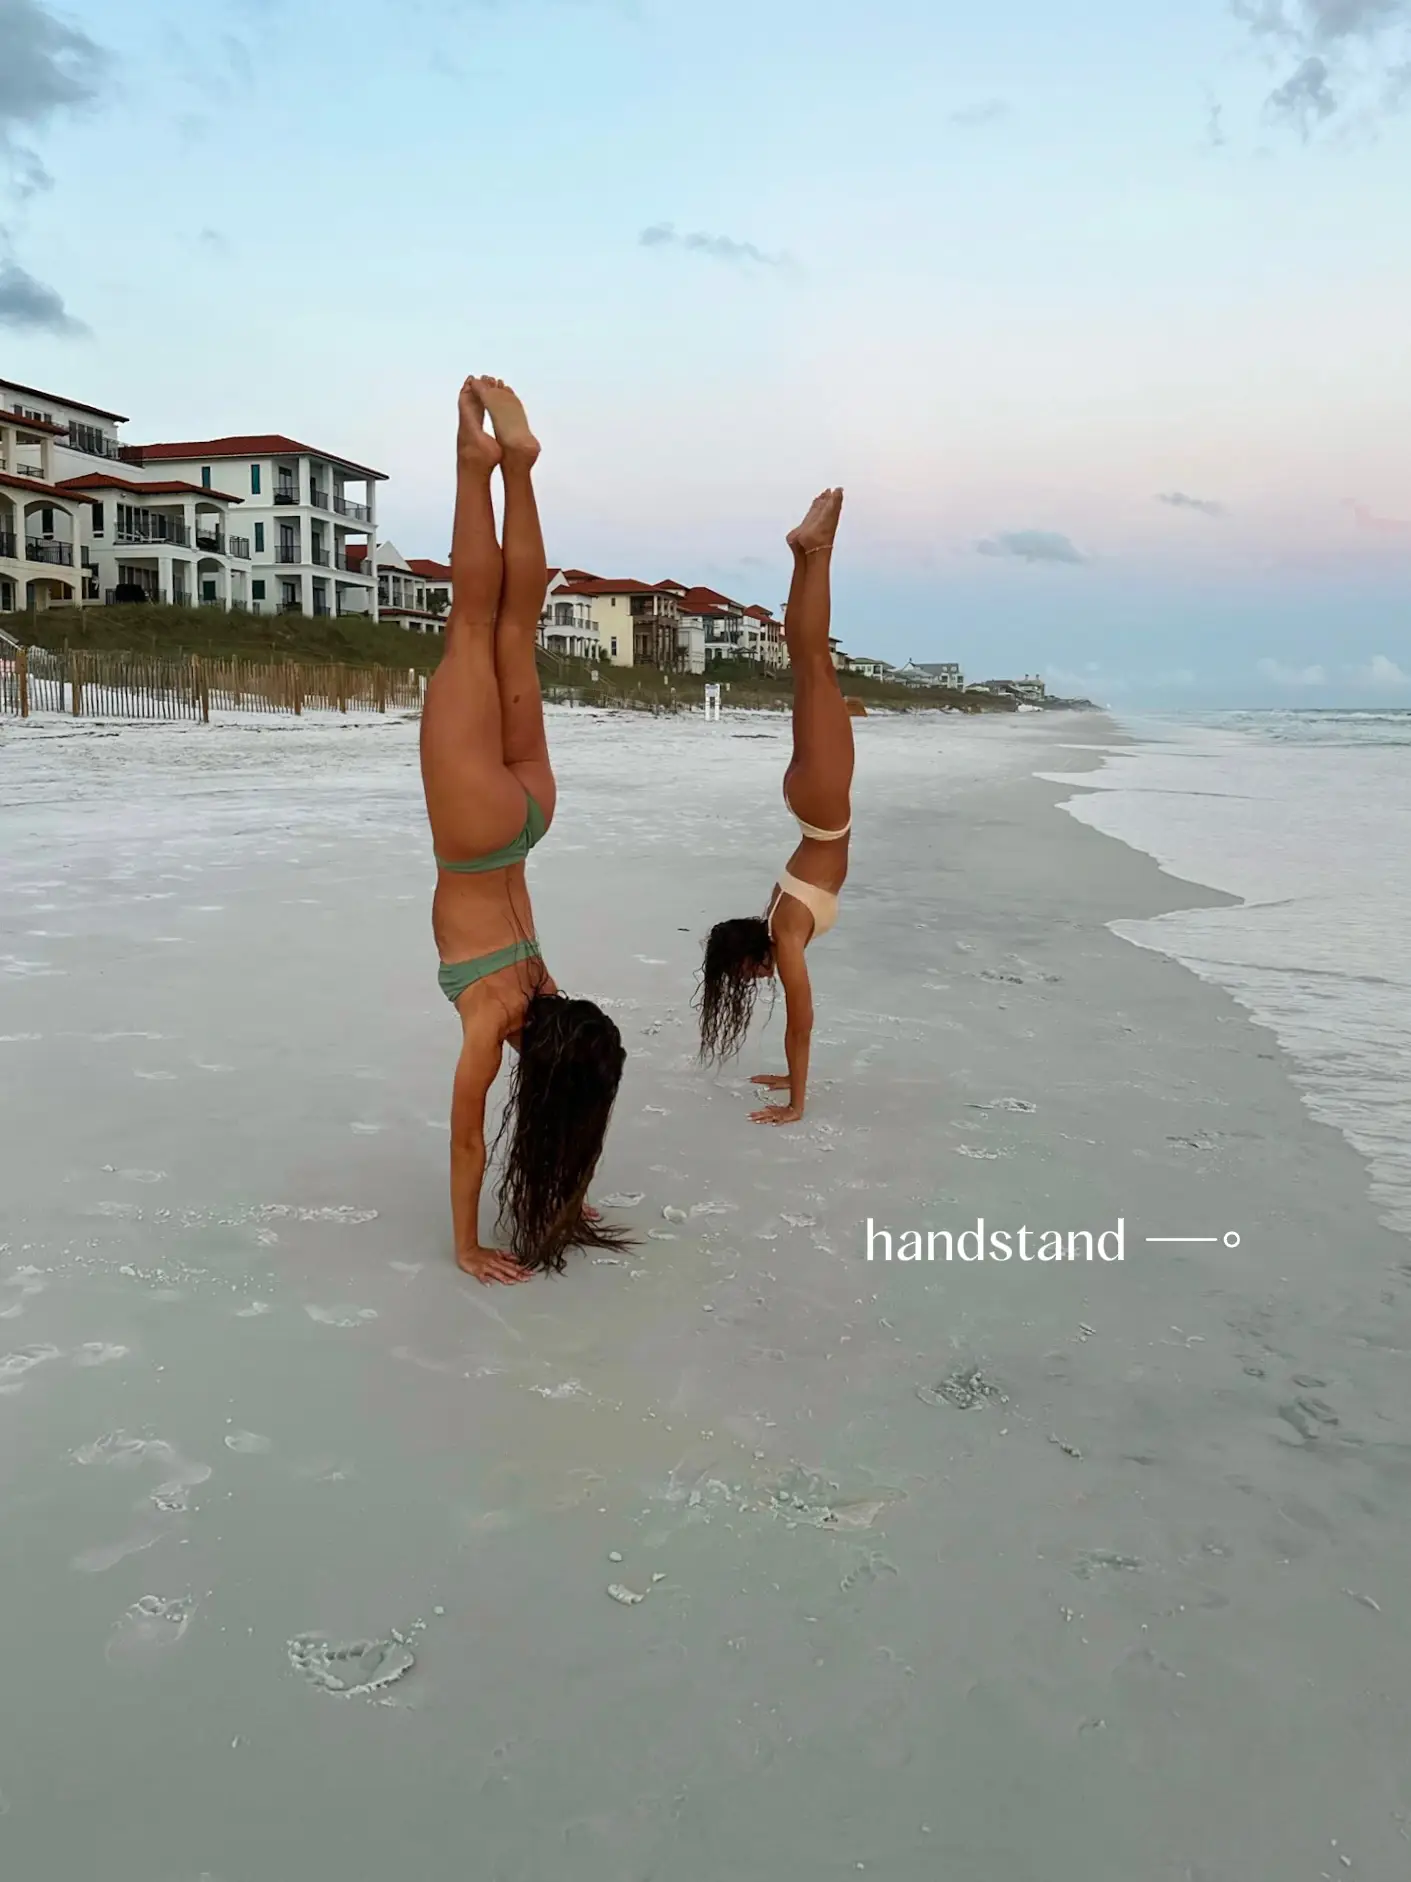  Two women are doing handstands in the ocean.